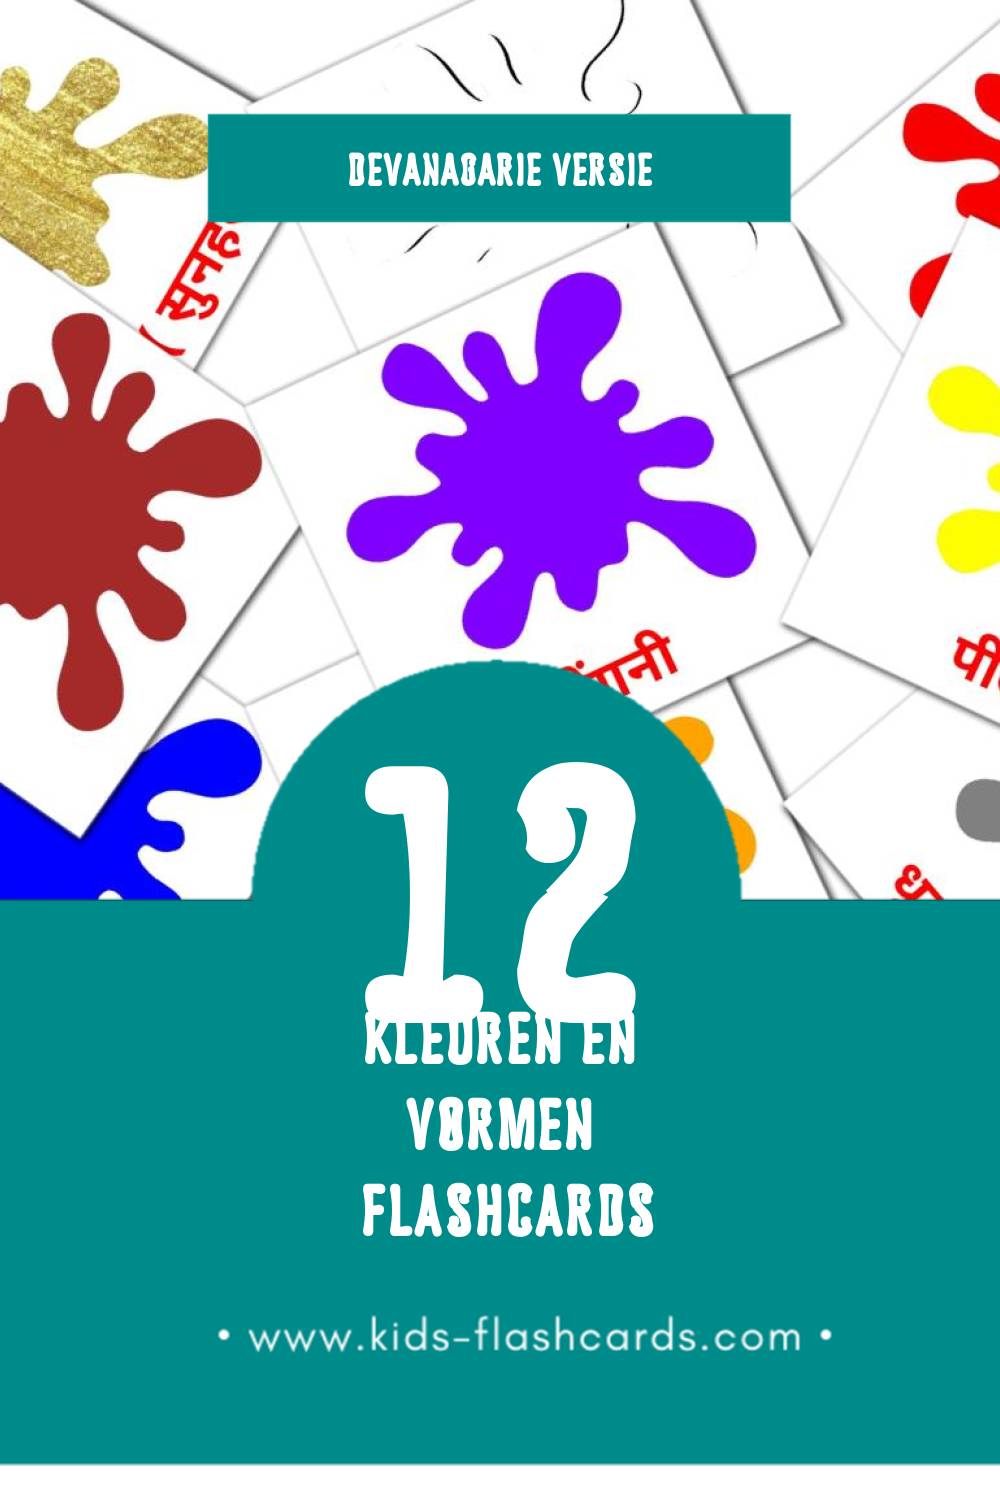 Visuele रंग और आकार Flashcards voor Kleuters (12 kaarten in het Devanagari)